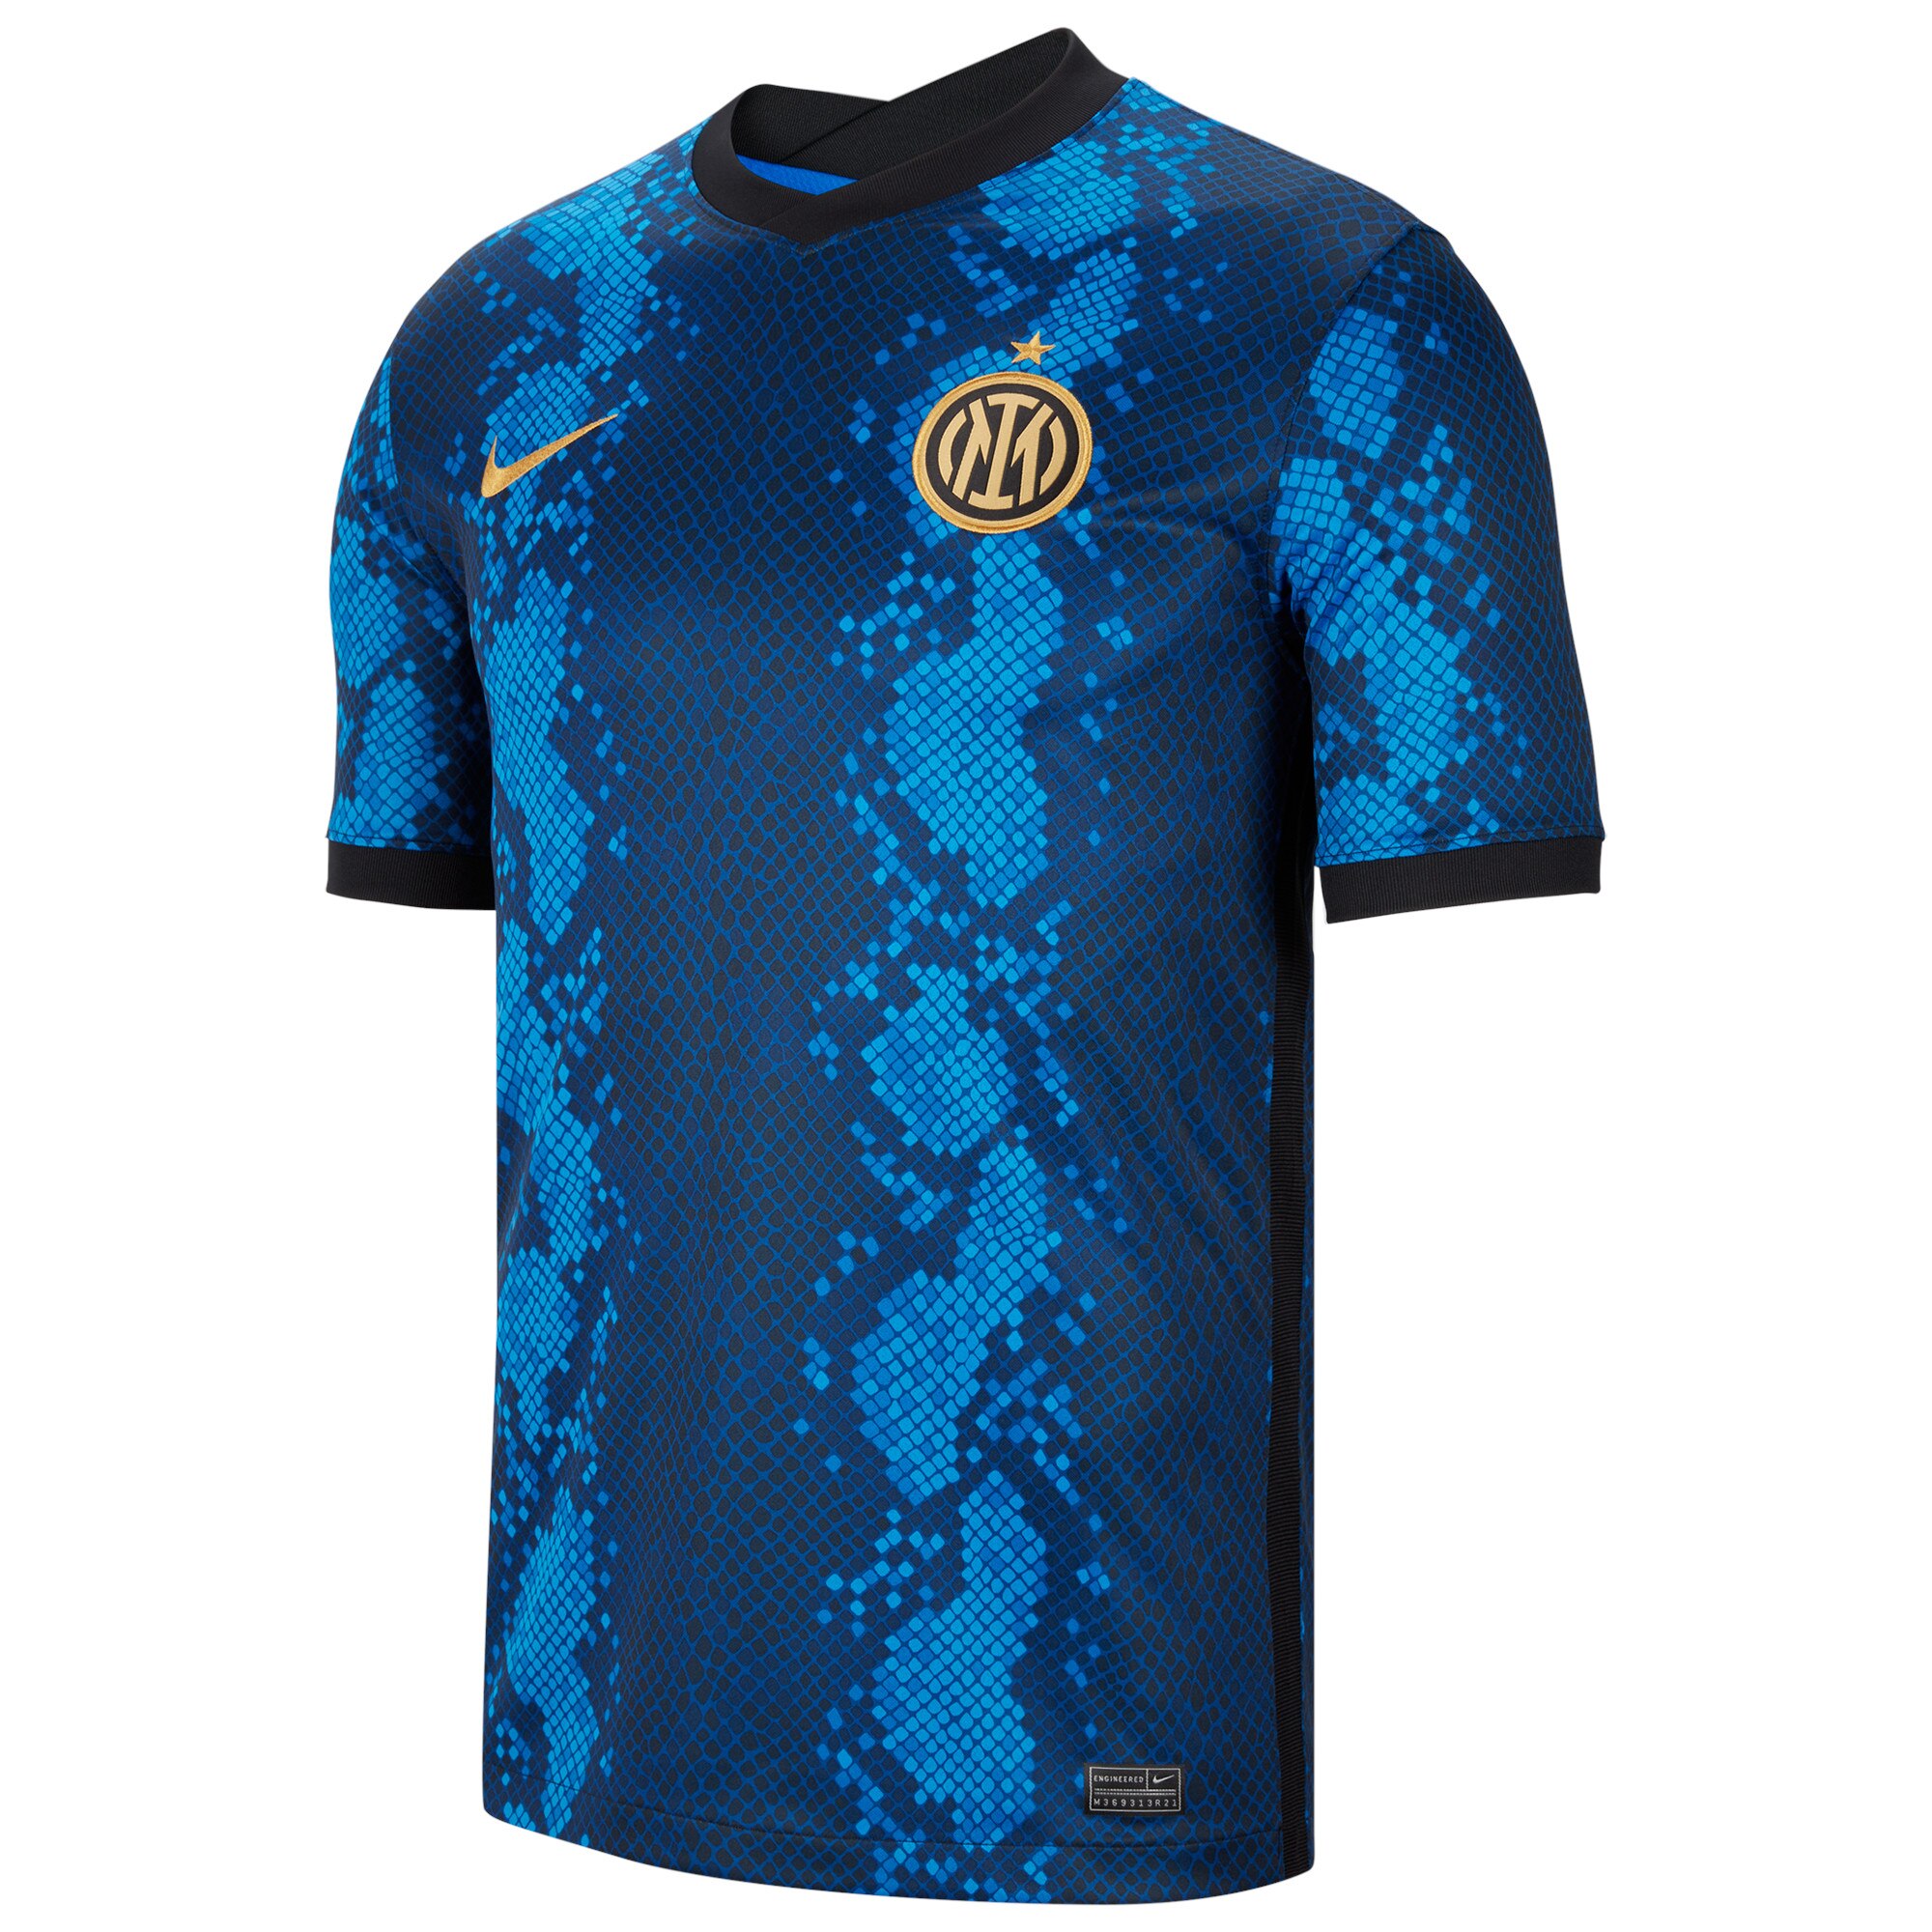 Inter Milan Home Stadium Shirt 2021-22 with Lukaku 9 printing